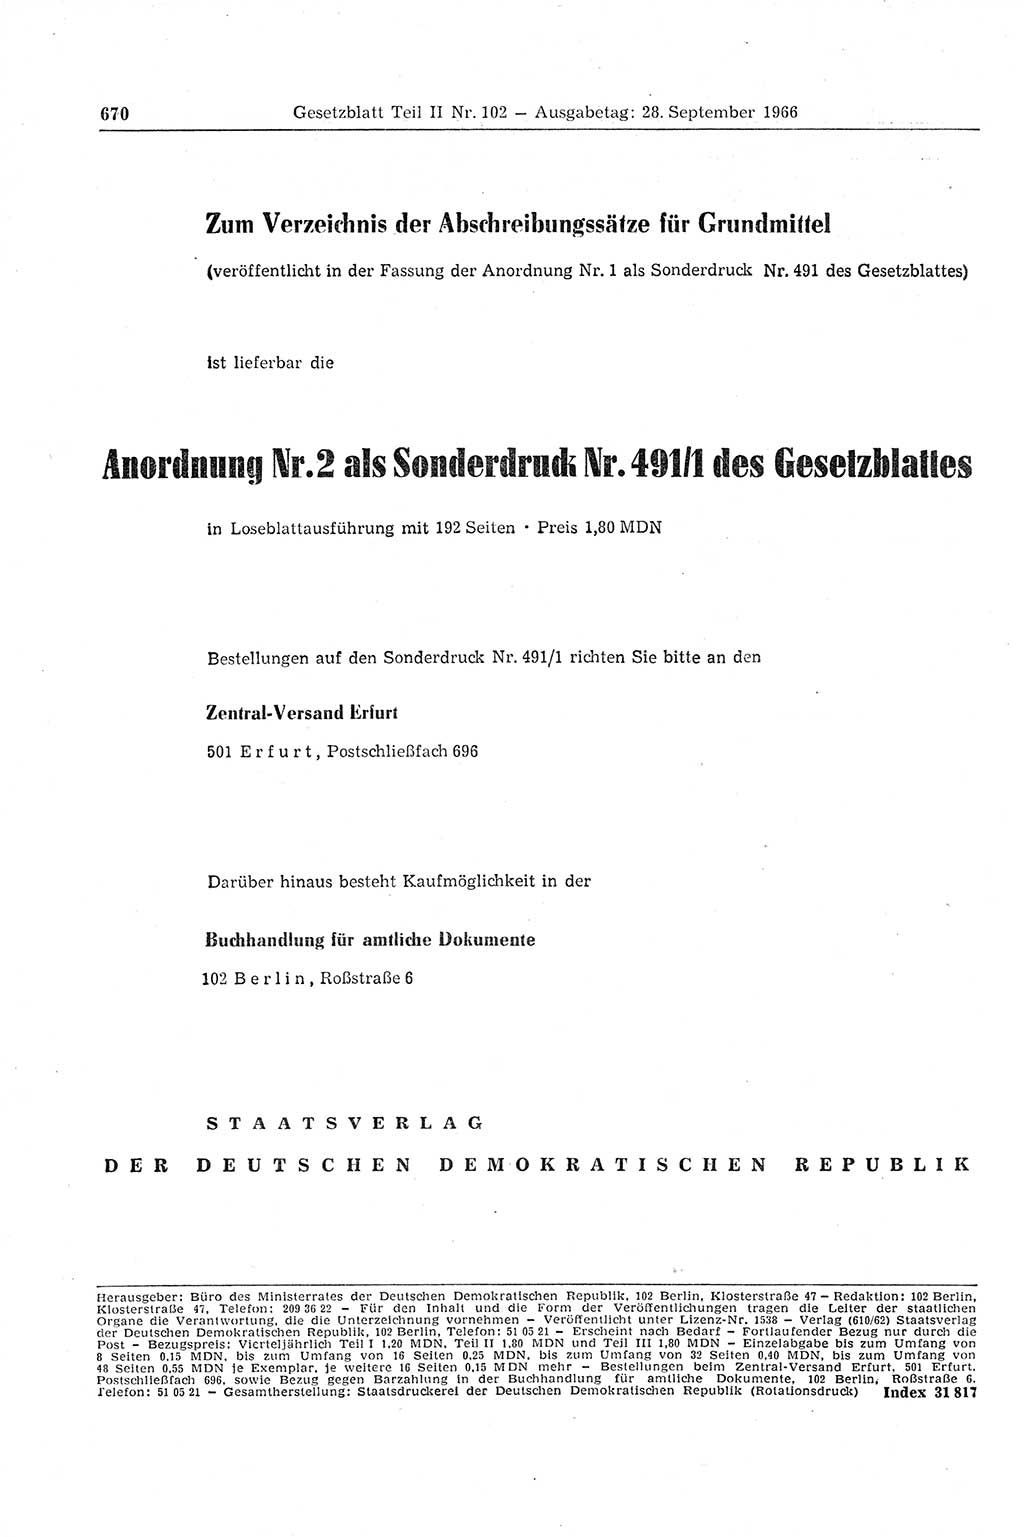 Gesetzblatt (GBl.) der Deutschen Demokratischen Republik (DDR) Teil ⅠⅠ 1966, Seite 670 (GBl. DDR ⅠⅠ 1966, S. 670)